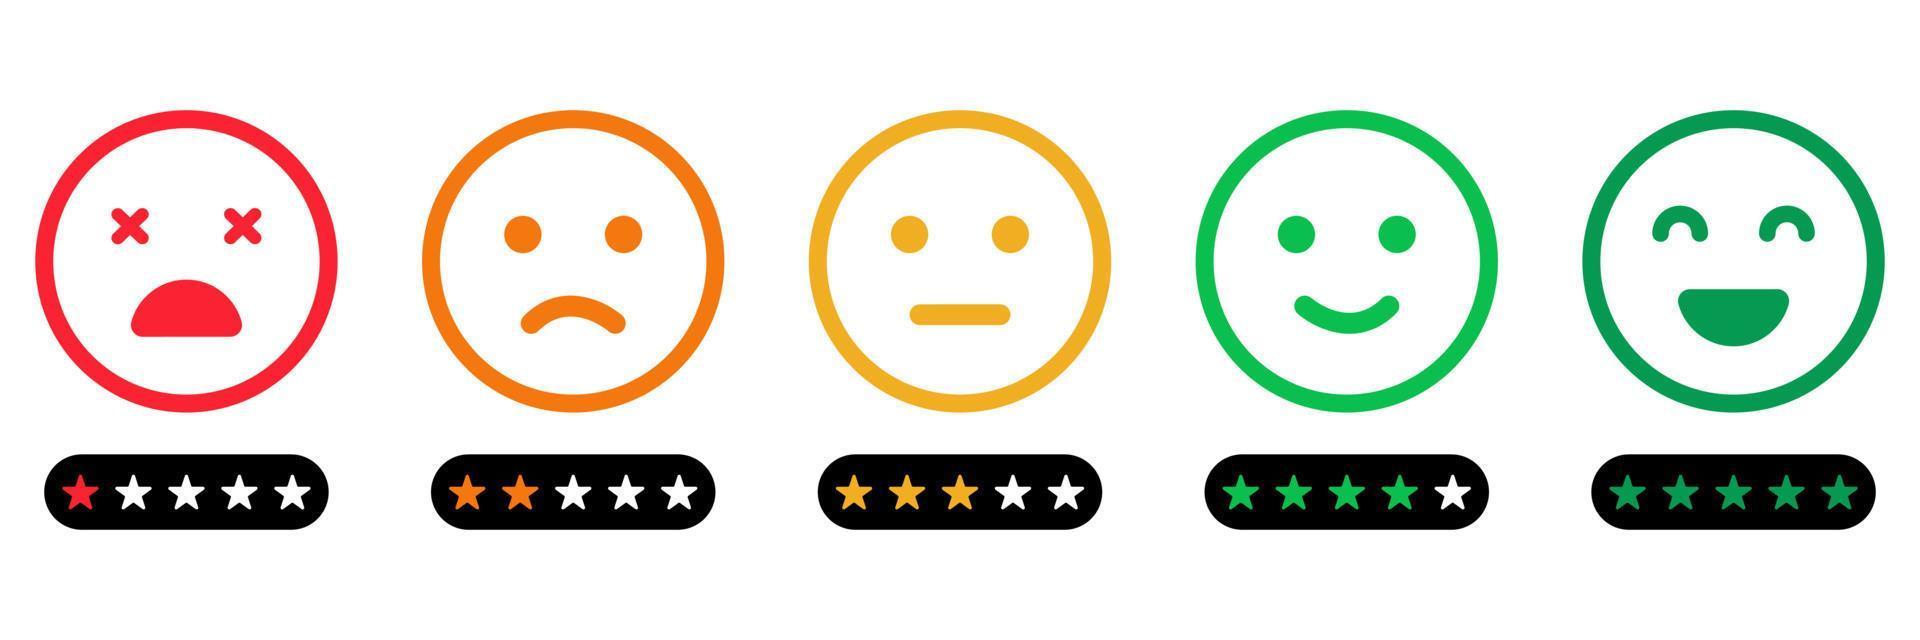 scala di feedback emoji con icona della linea di stelle. l'umore dei clienti dal buon viso felice al concetto arrabbiato e triste. feedback di emoticon. indagine di livello di soddisfazione del cliente. illustrazione vettoriale isolata.